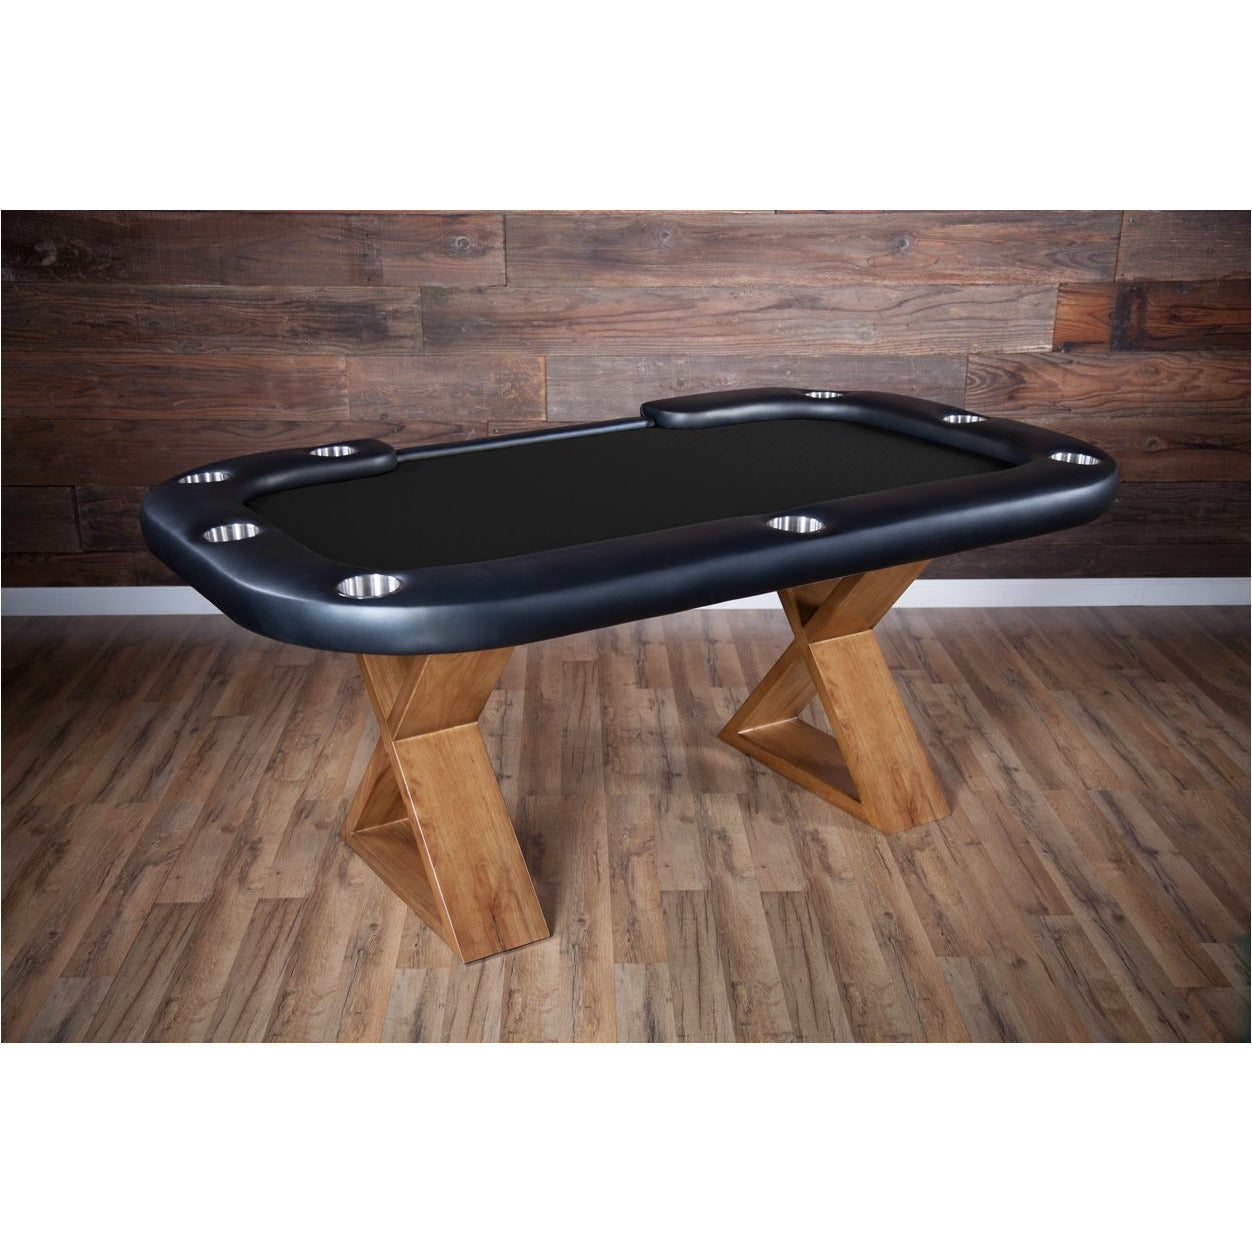 BBO Helmsley Poker Table Rustic Wood Dealers Cut Speed Suited Black